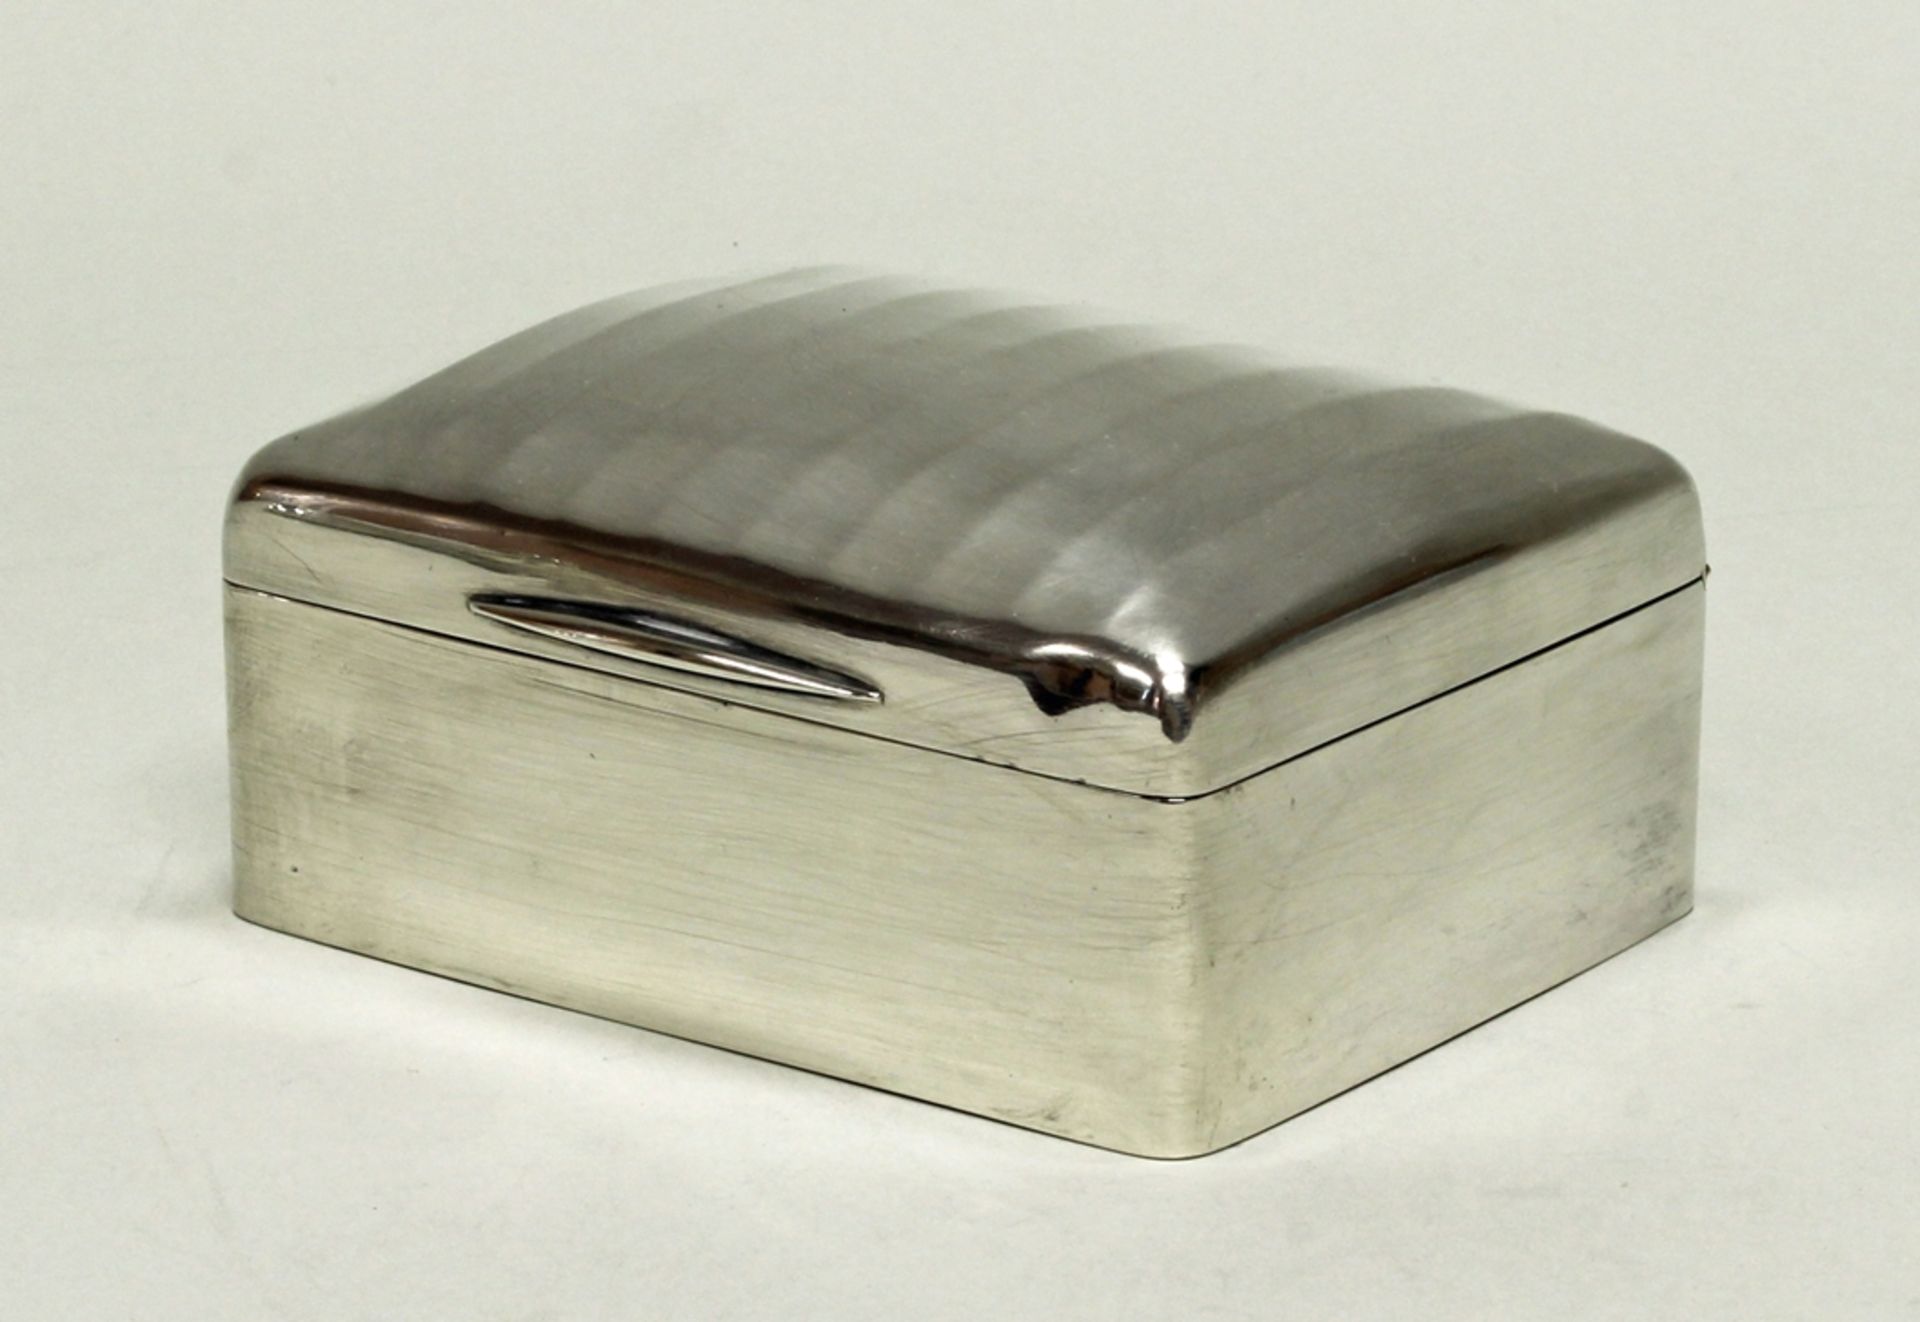 Zigarettendose, Silber 925, London, 1910, William Comyns & Sons, innen Holz sowie Deckel vergoldet,